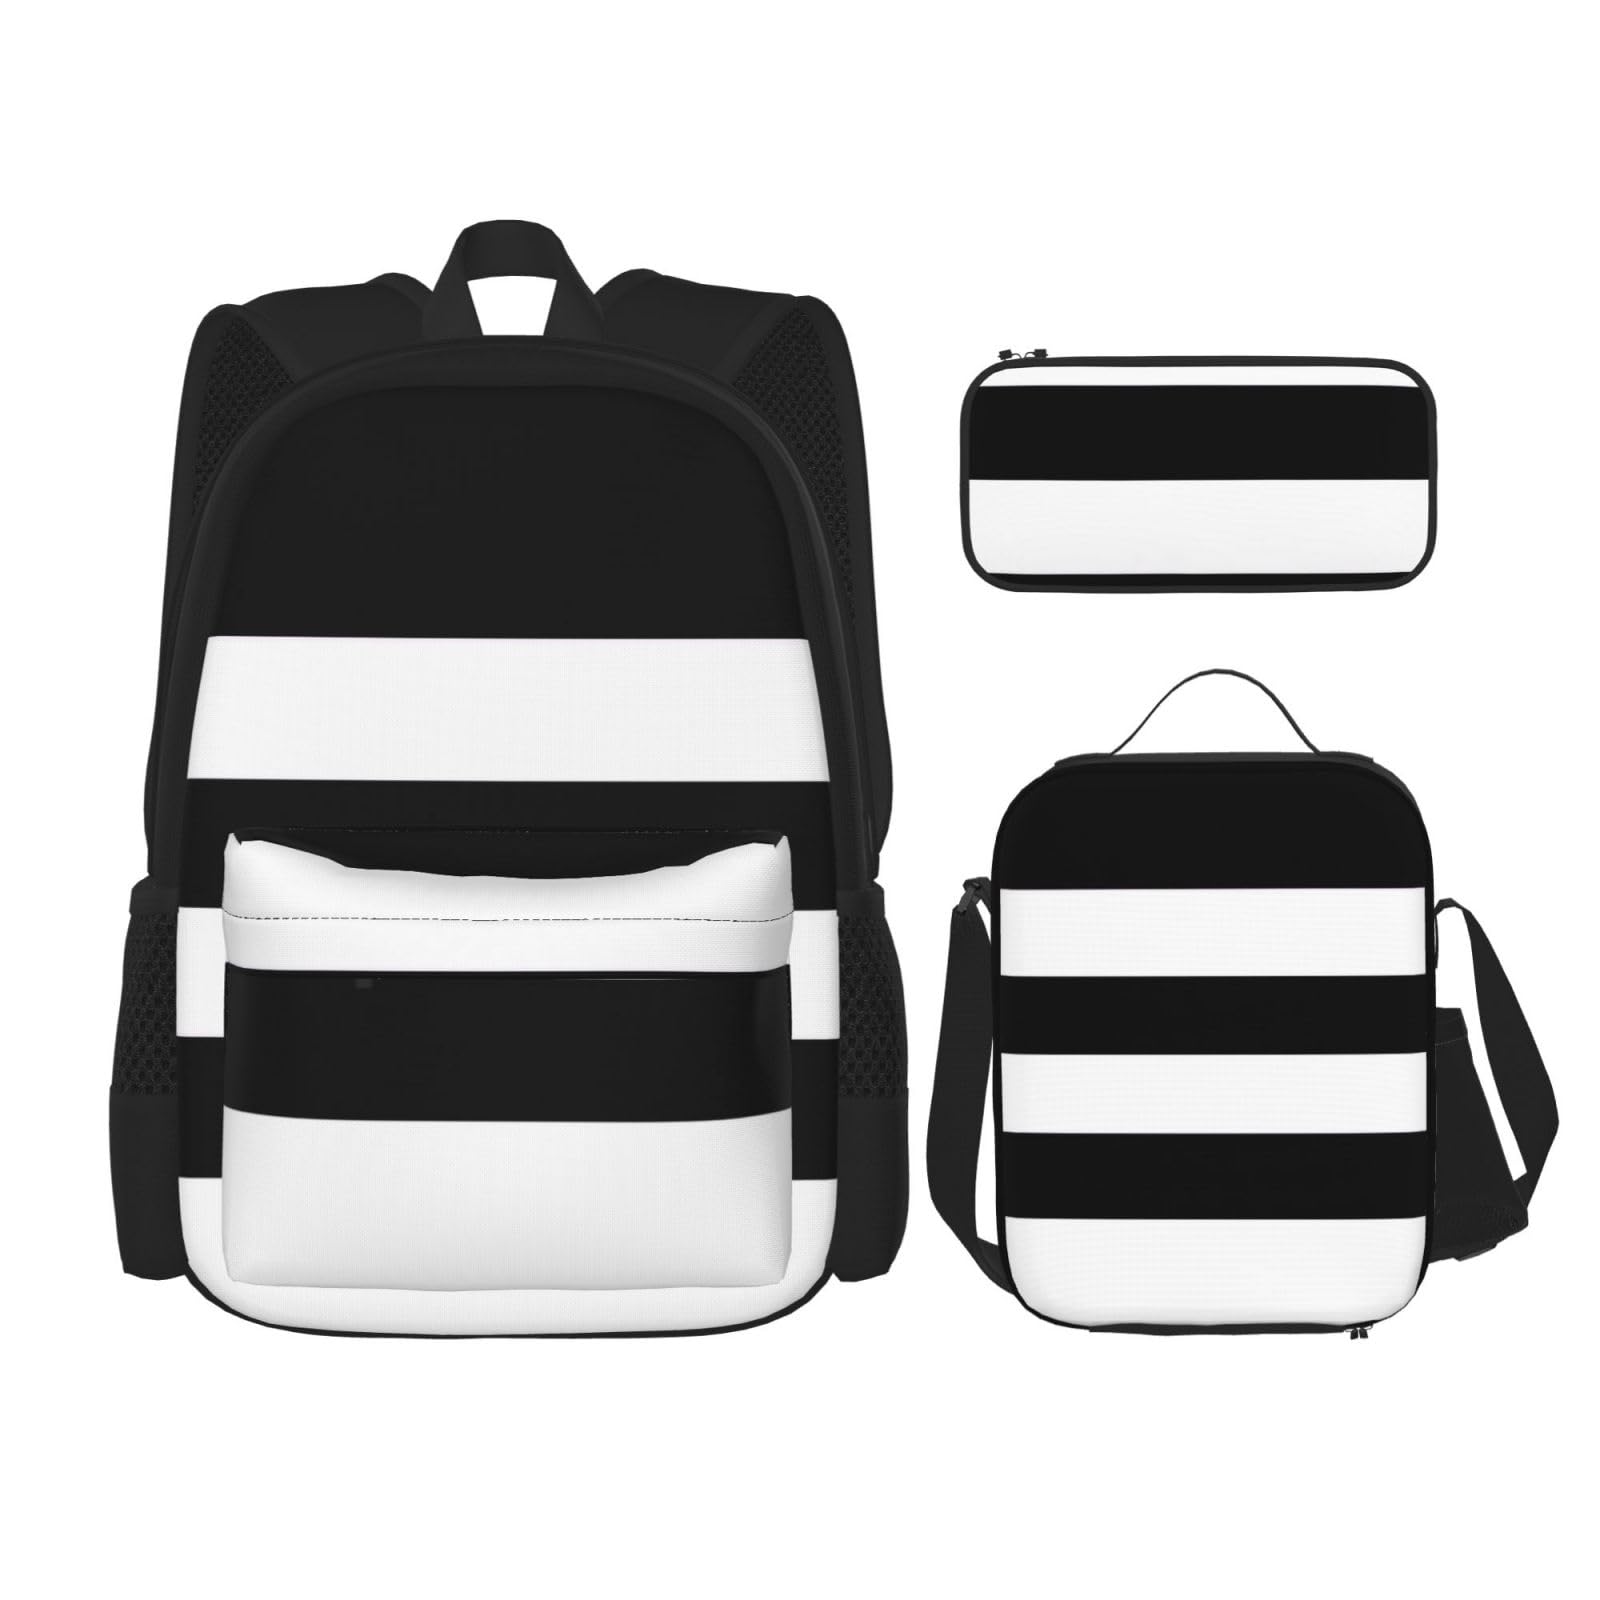 送料無料NEZIH stripes black white Backpack Travel Daypack With Lunch Box Pencil Bag 3 Pcs Set Casual Rucksack Fashion Bac